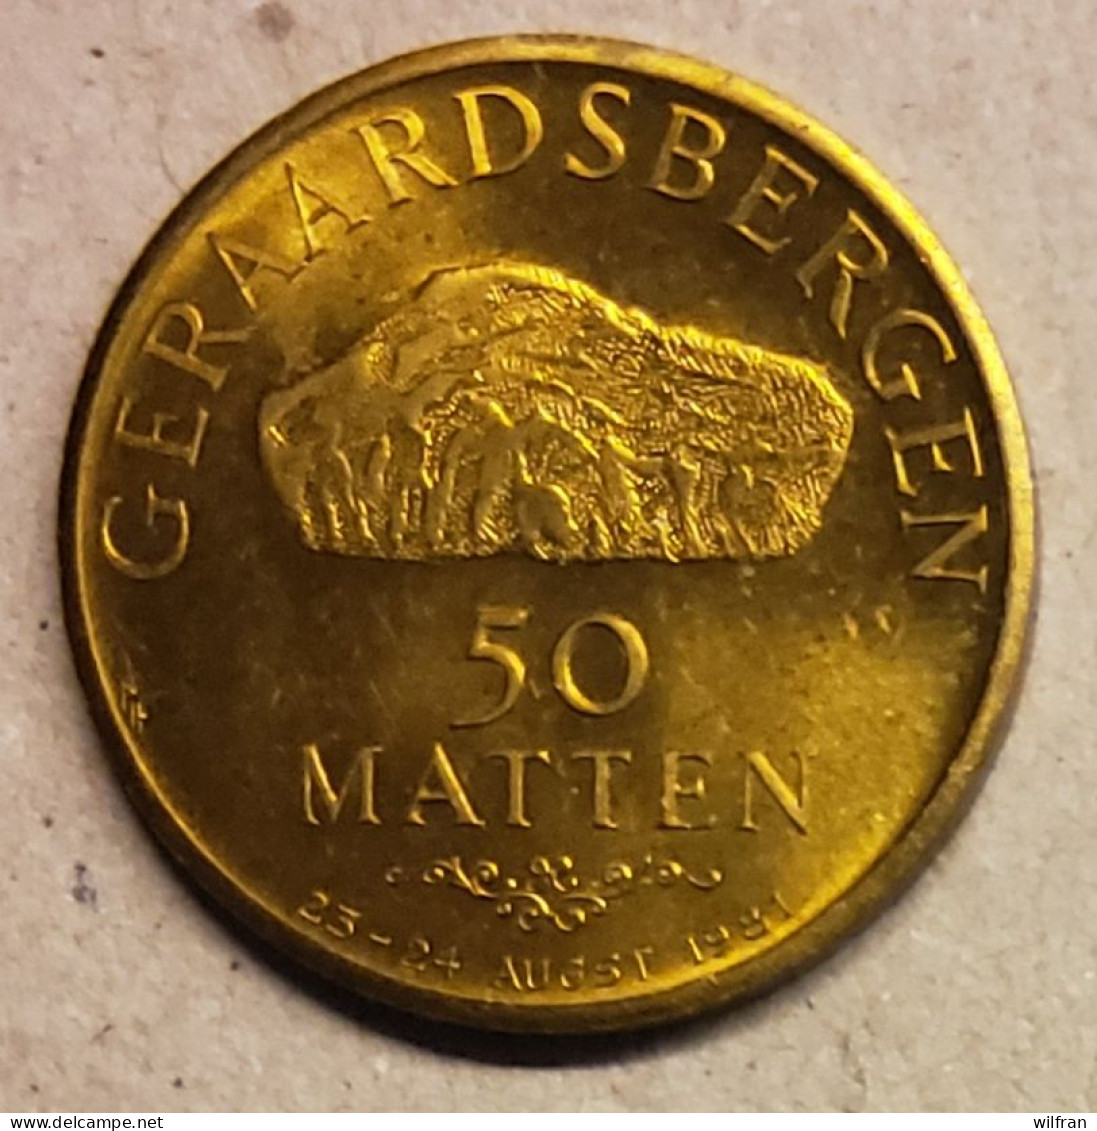 4528 Vz Geraardsbergen 50 Matten - Kz Manneken Pis Anno 1455 - Gemeindemünzmarken